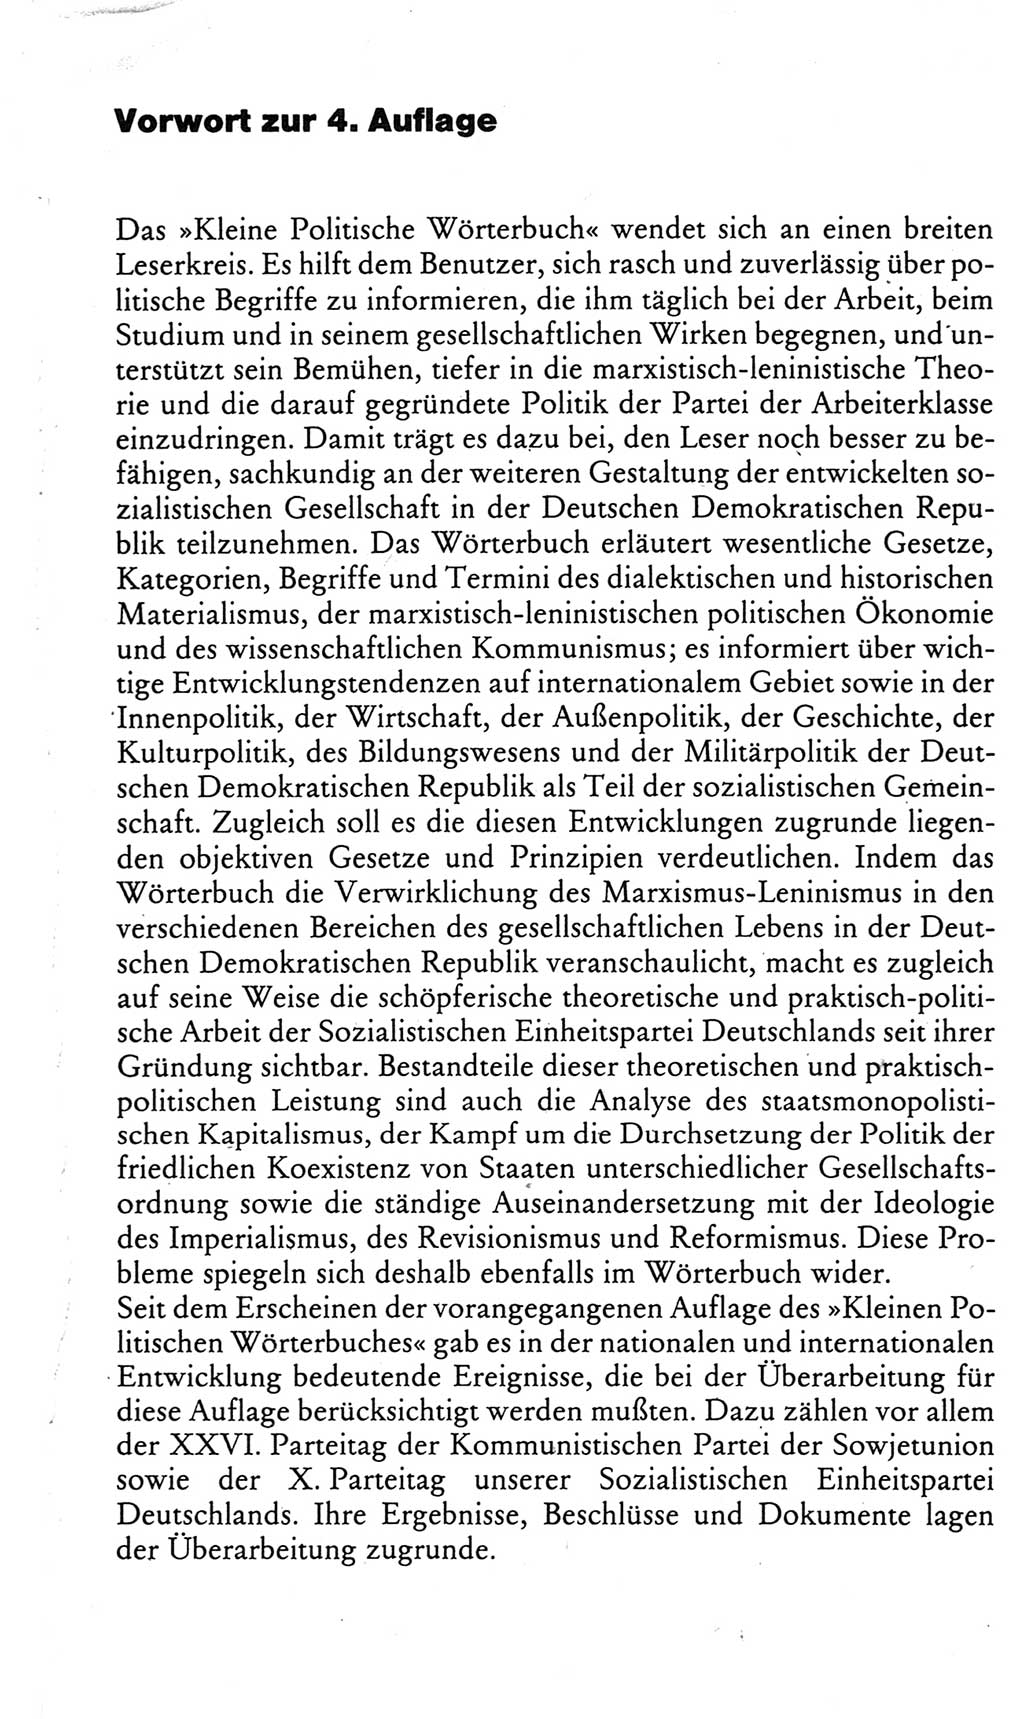 Kleines politisches Wörterbuch [Deutsche Demokratische Republik (DDR)] 1985, Seite 7 (Kl. pol. Wb. DDR 1985, S. 7)